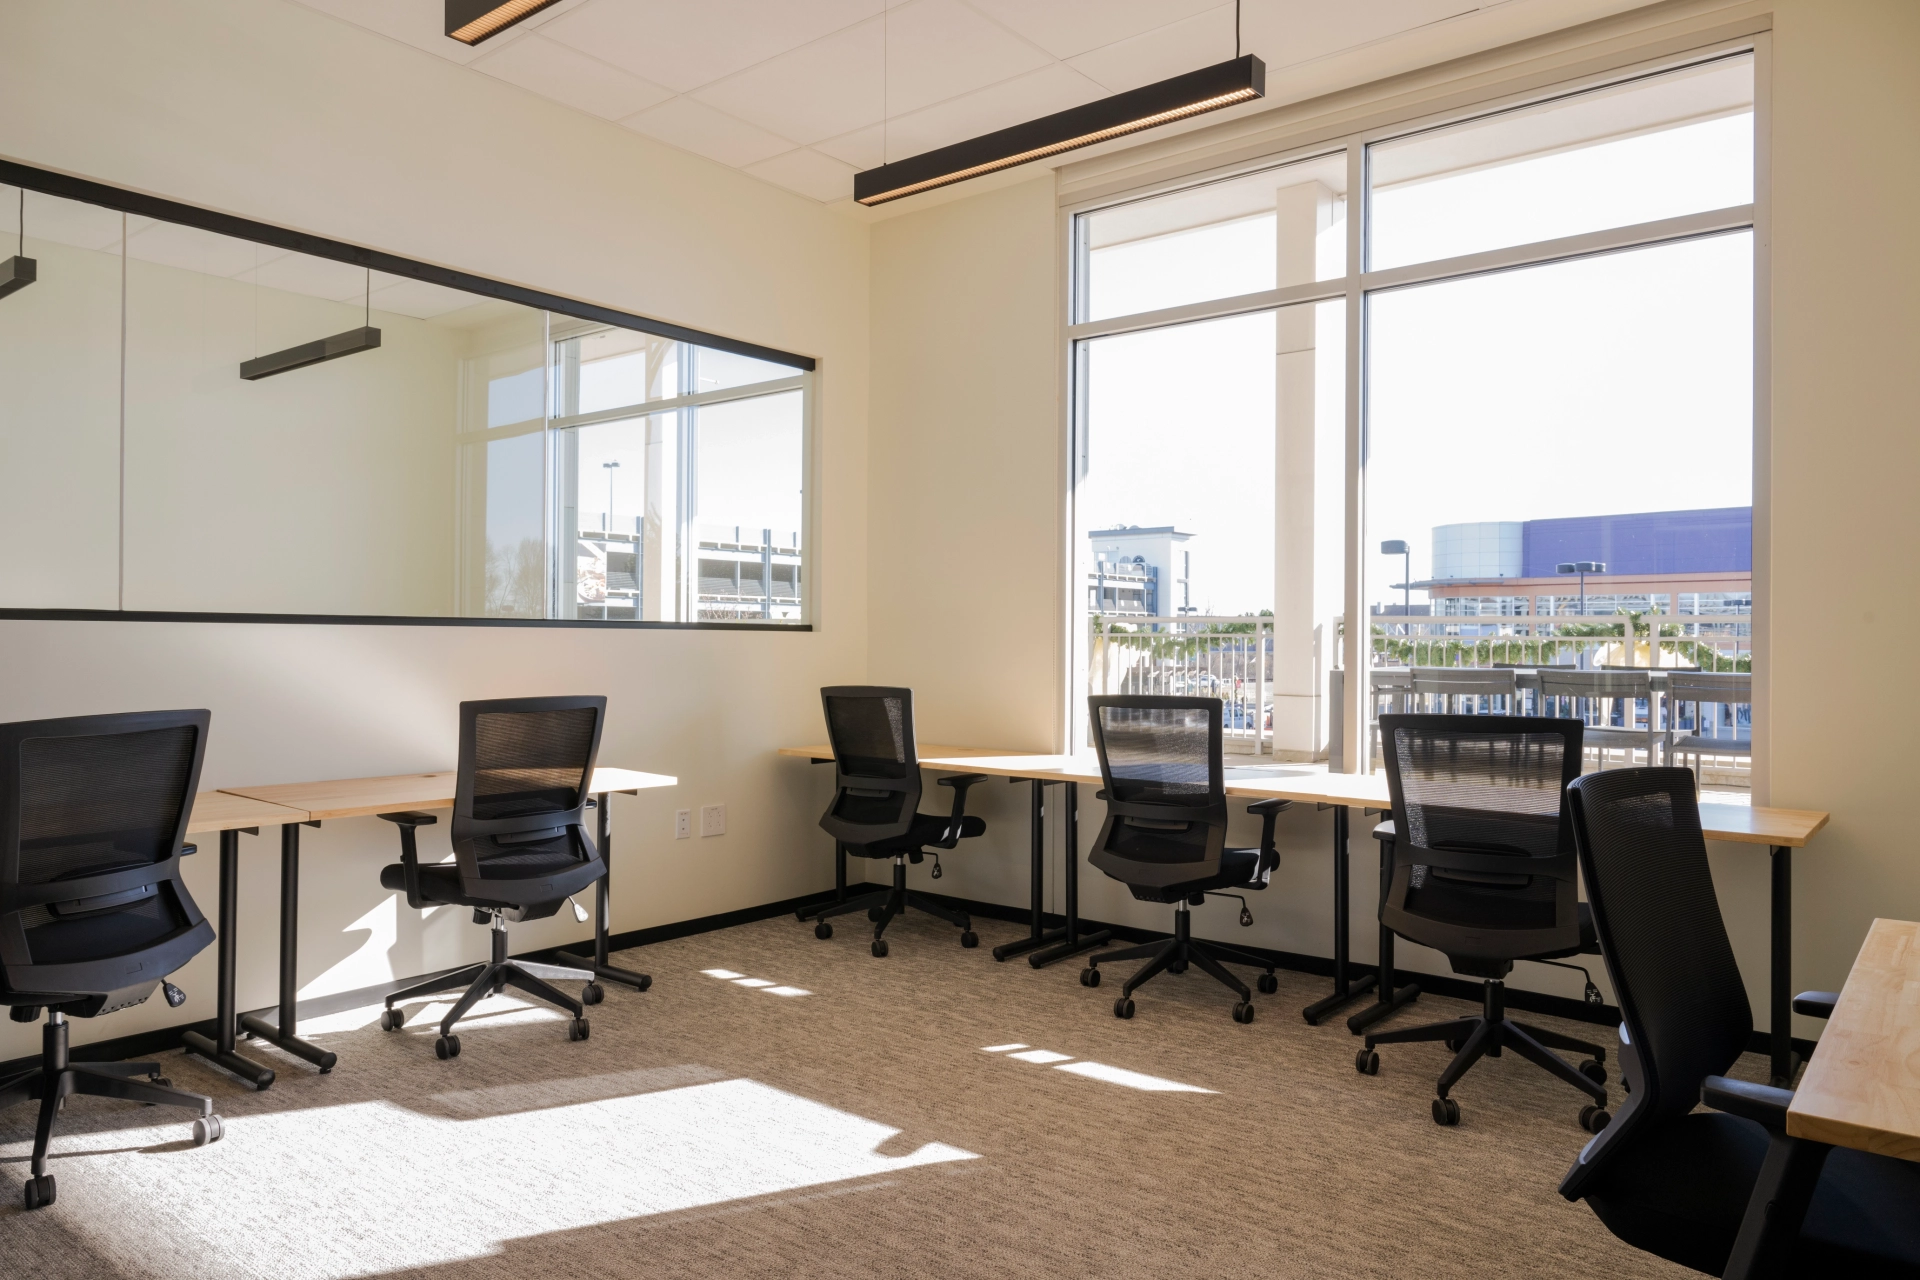 Un espace de coworking Dedham équipé de bureaux et de chaises, éclairé par la lumière naturelle d'une fenêtre.